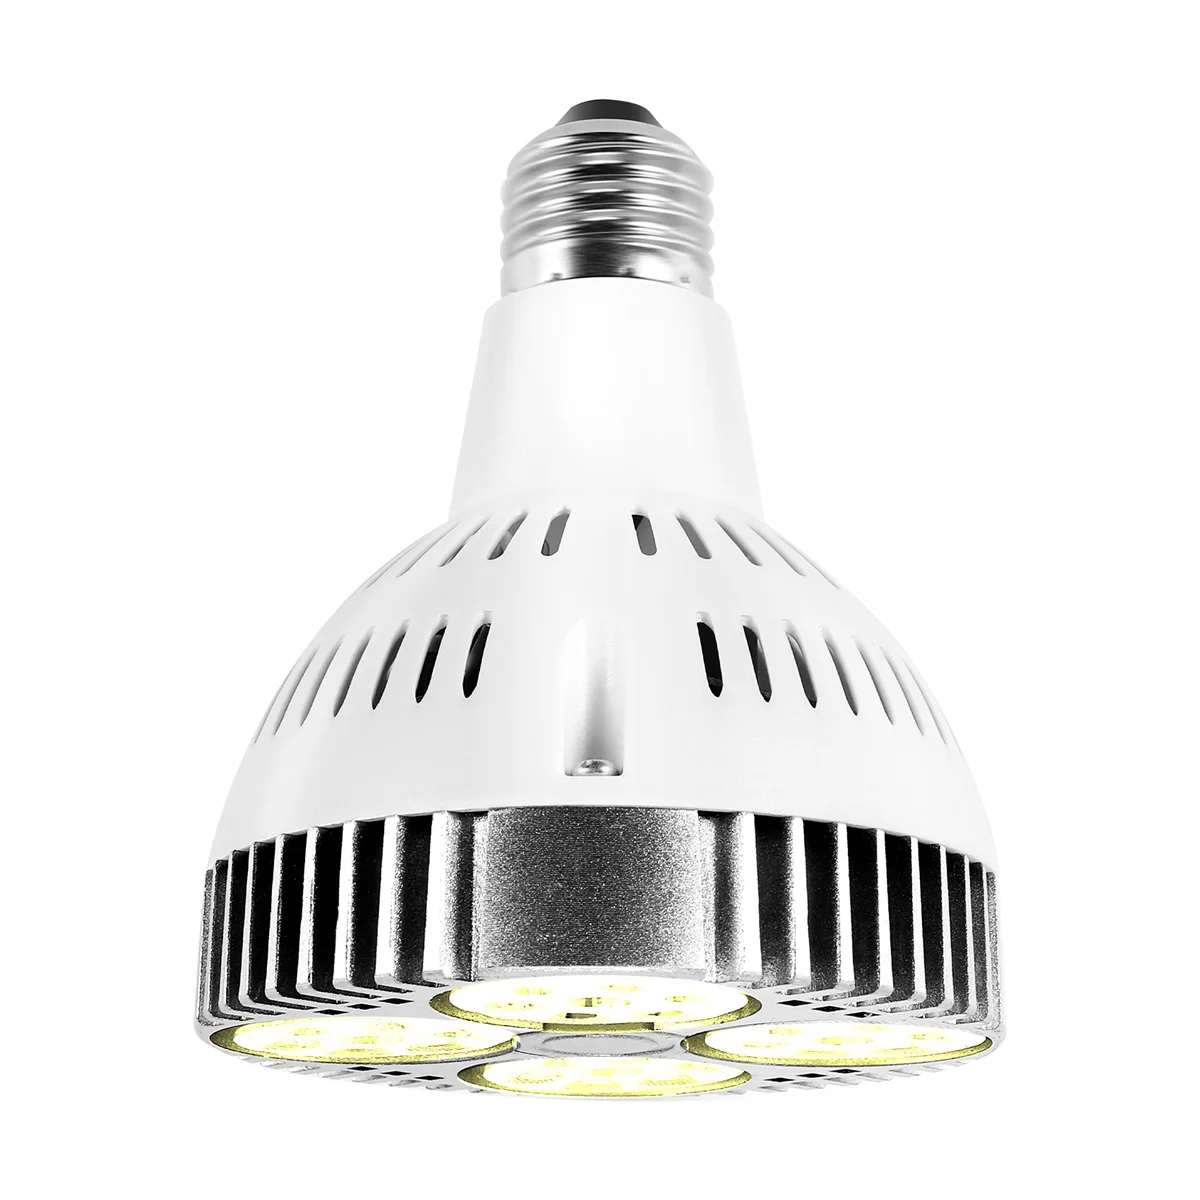 

E27 Plant Lamp Light Bulb 35W LED Plant Grow Light Full Spectrum Warm White Light for Indoor Garden Greenhouse